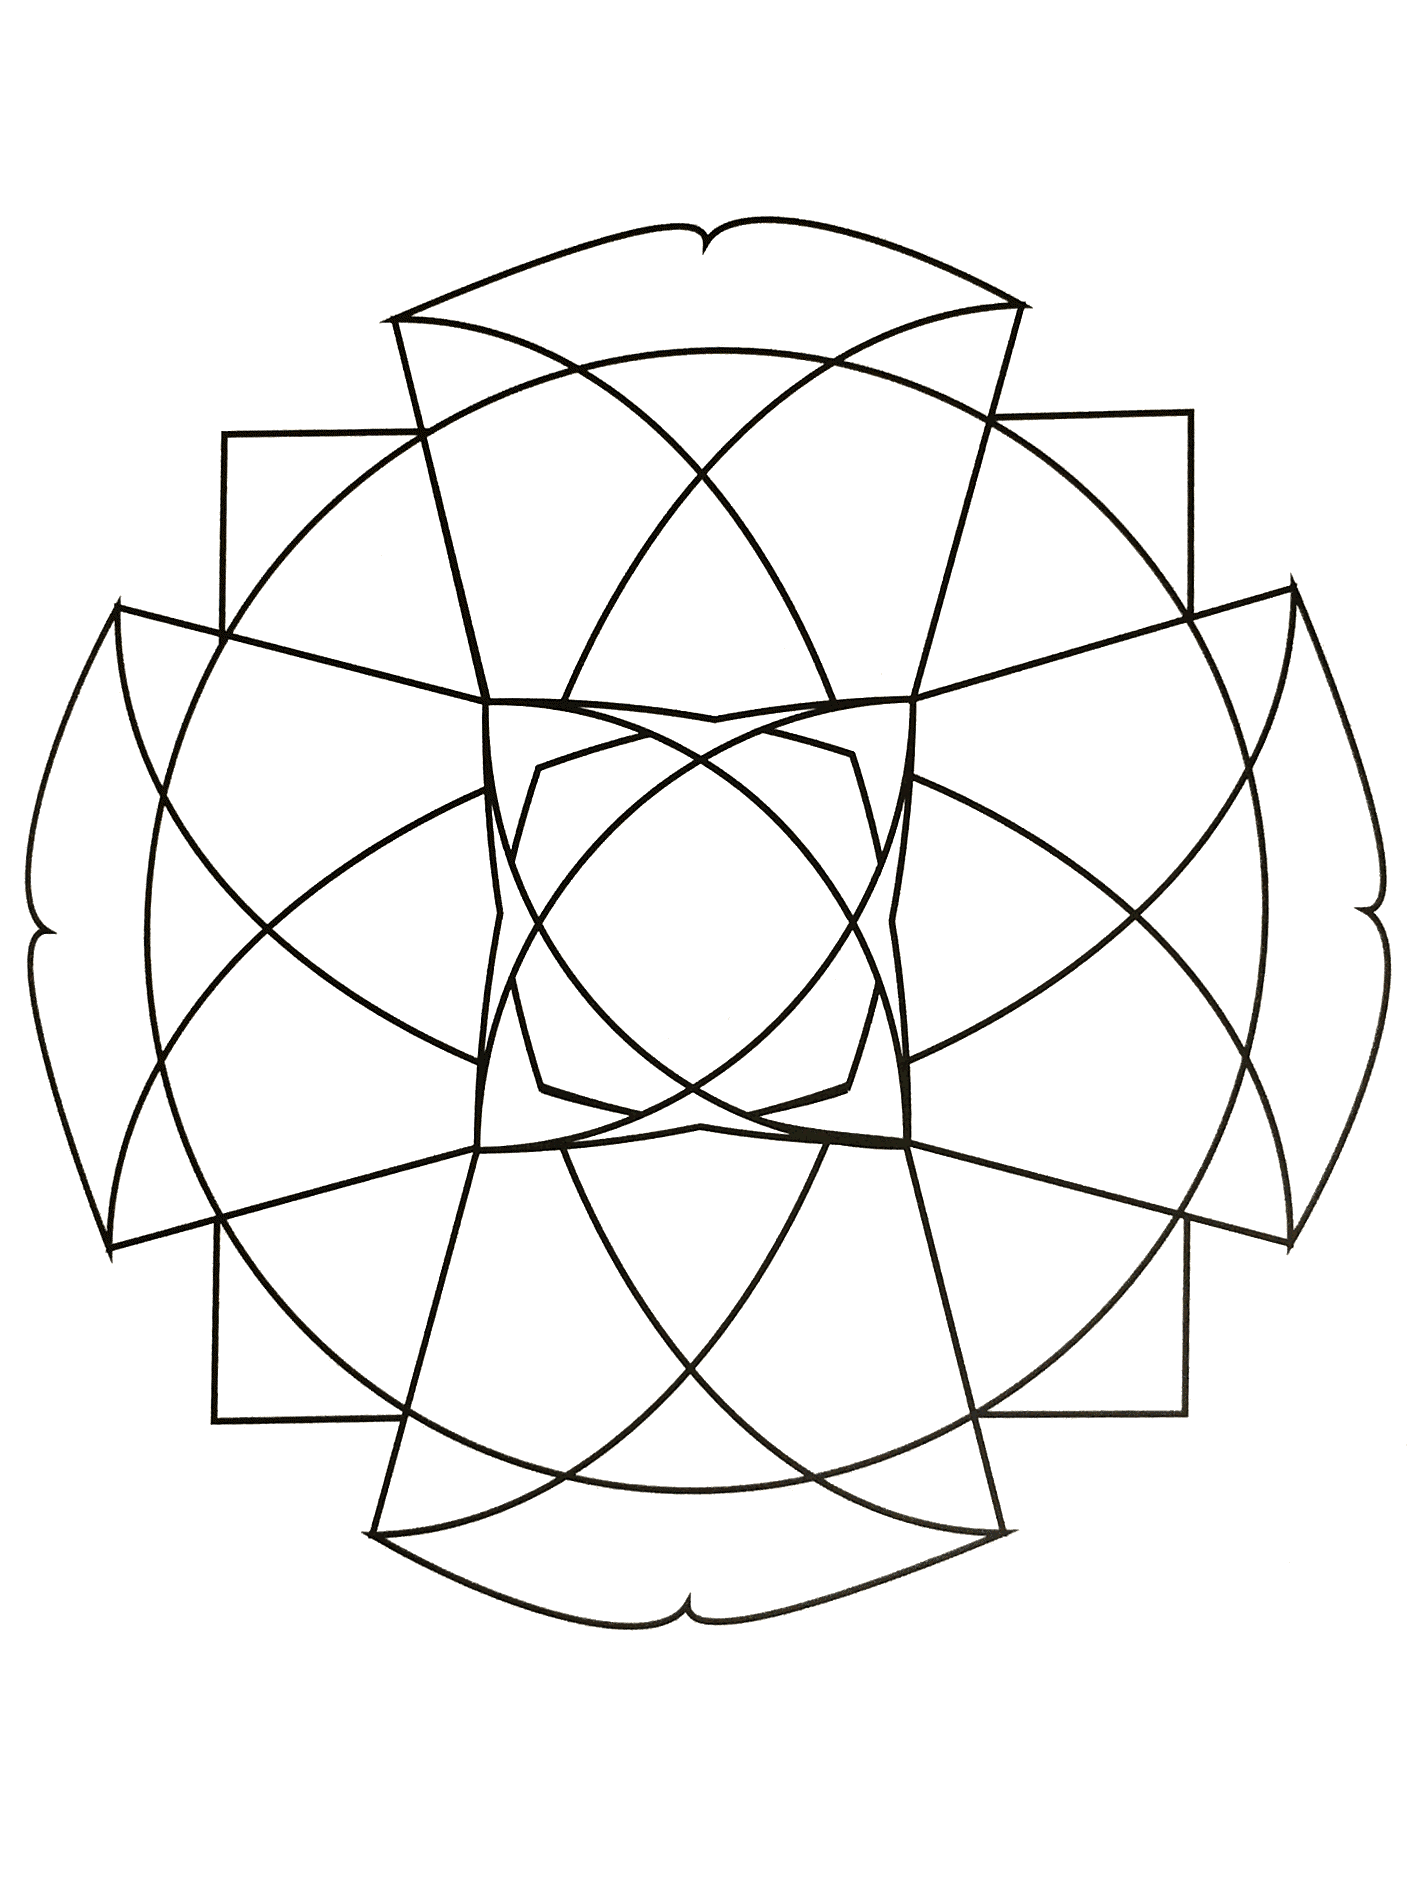 Mandala da stampare che rappresenta una grande croce e altre forme geometriche (triangolo, rombo...).